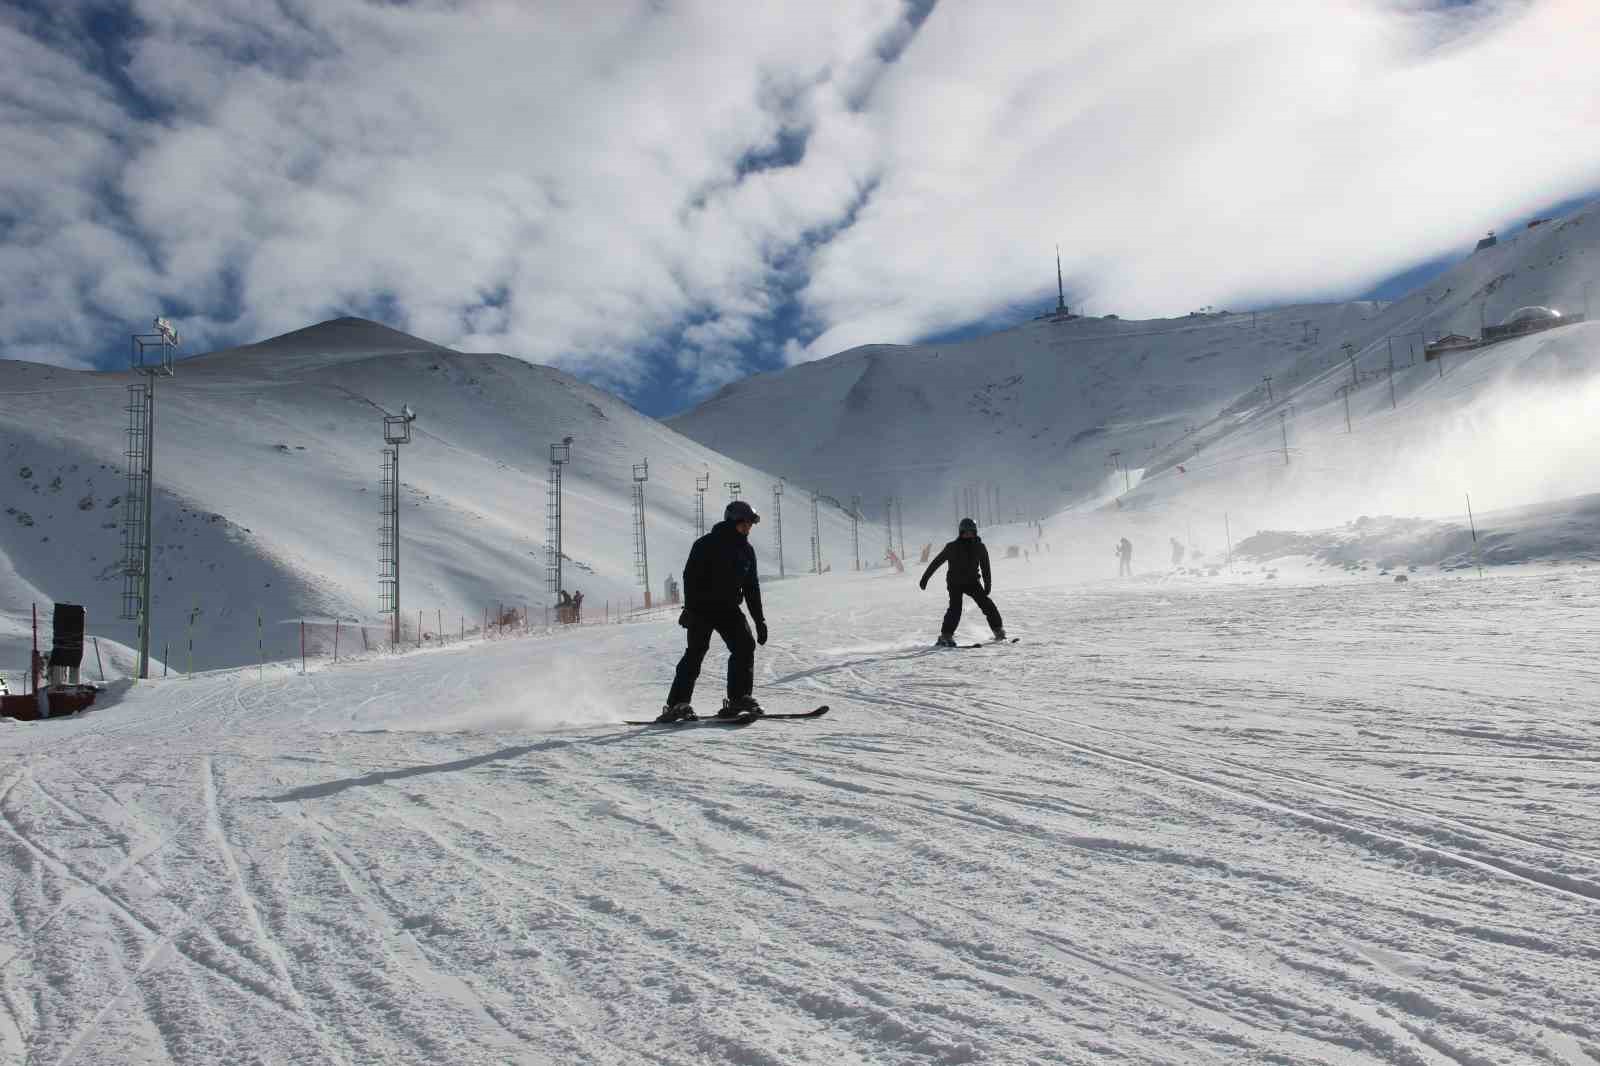 Palandöken’de kayak sezonu açıldı